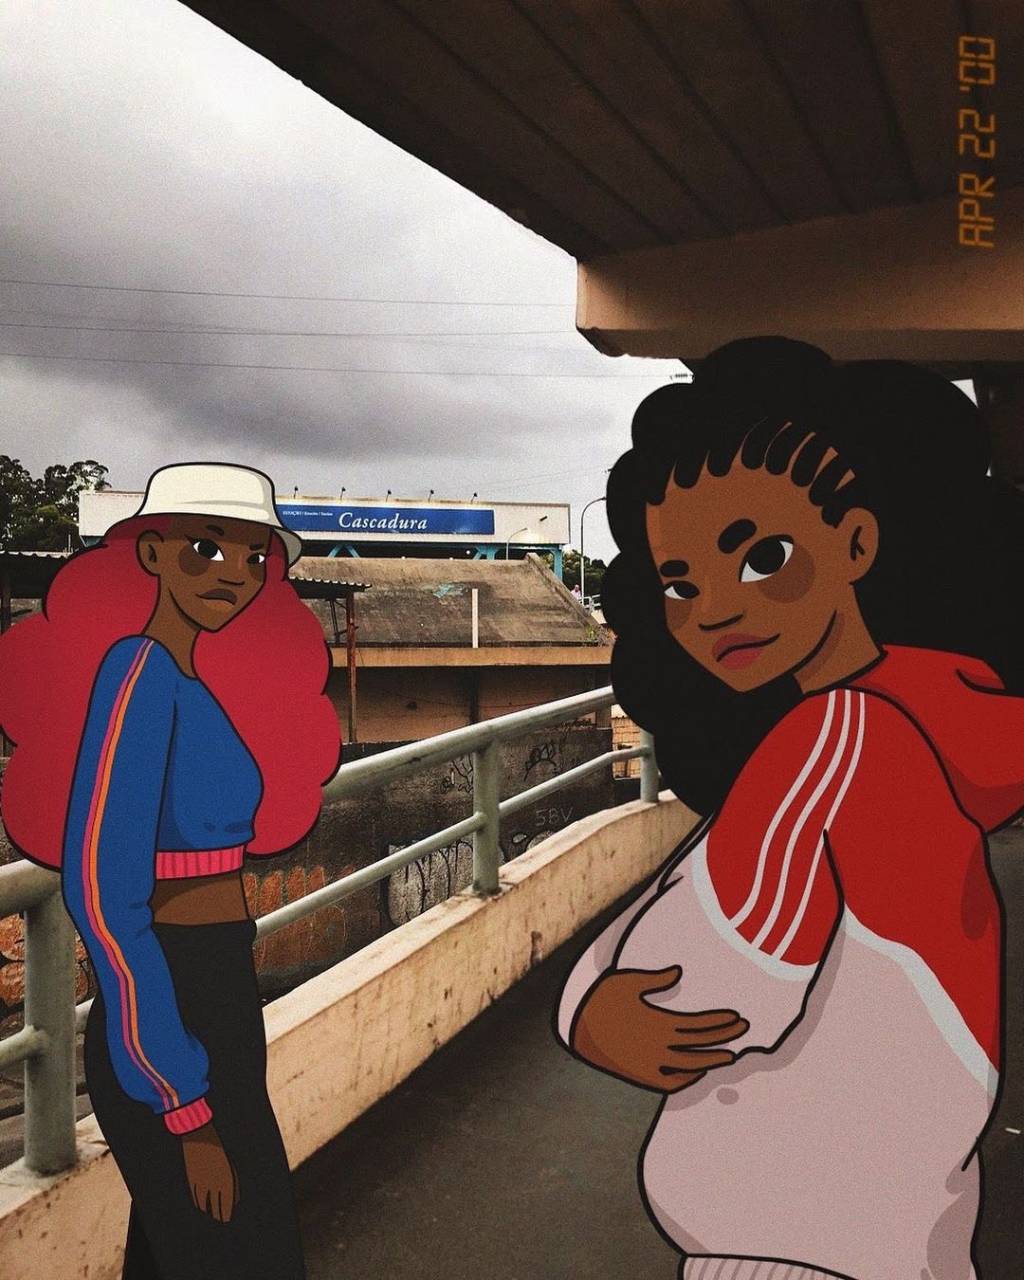 Foto e ilustração de Amora Moreira de duas meninas na estação de Cascadura